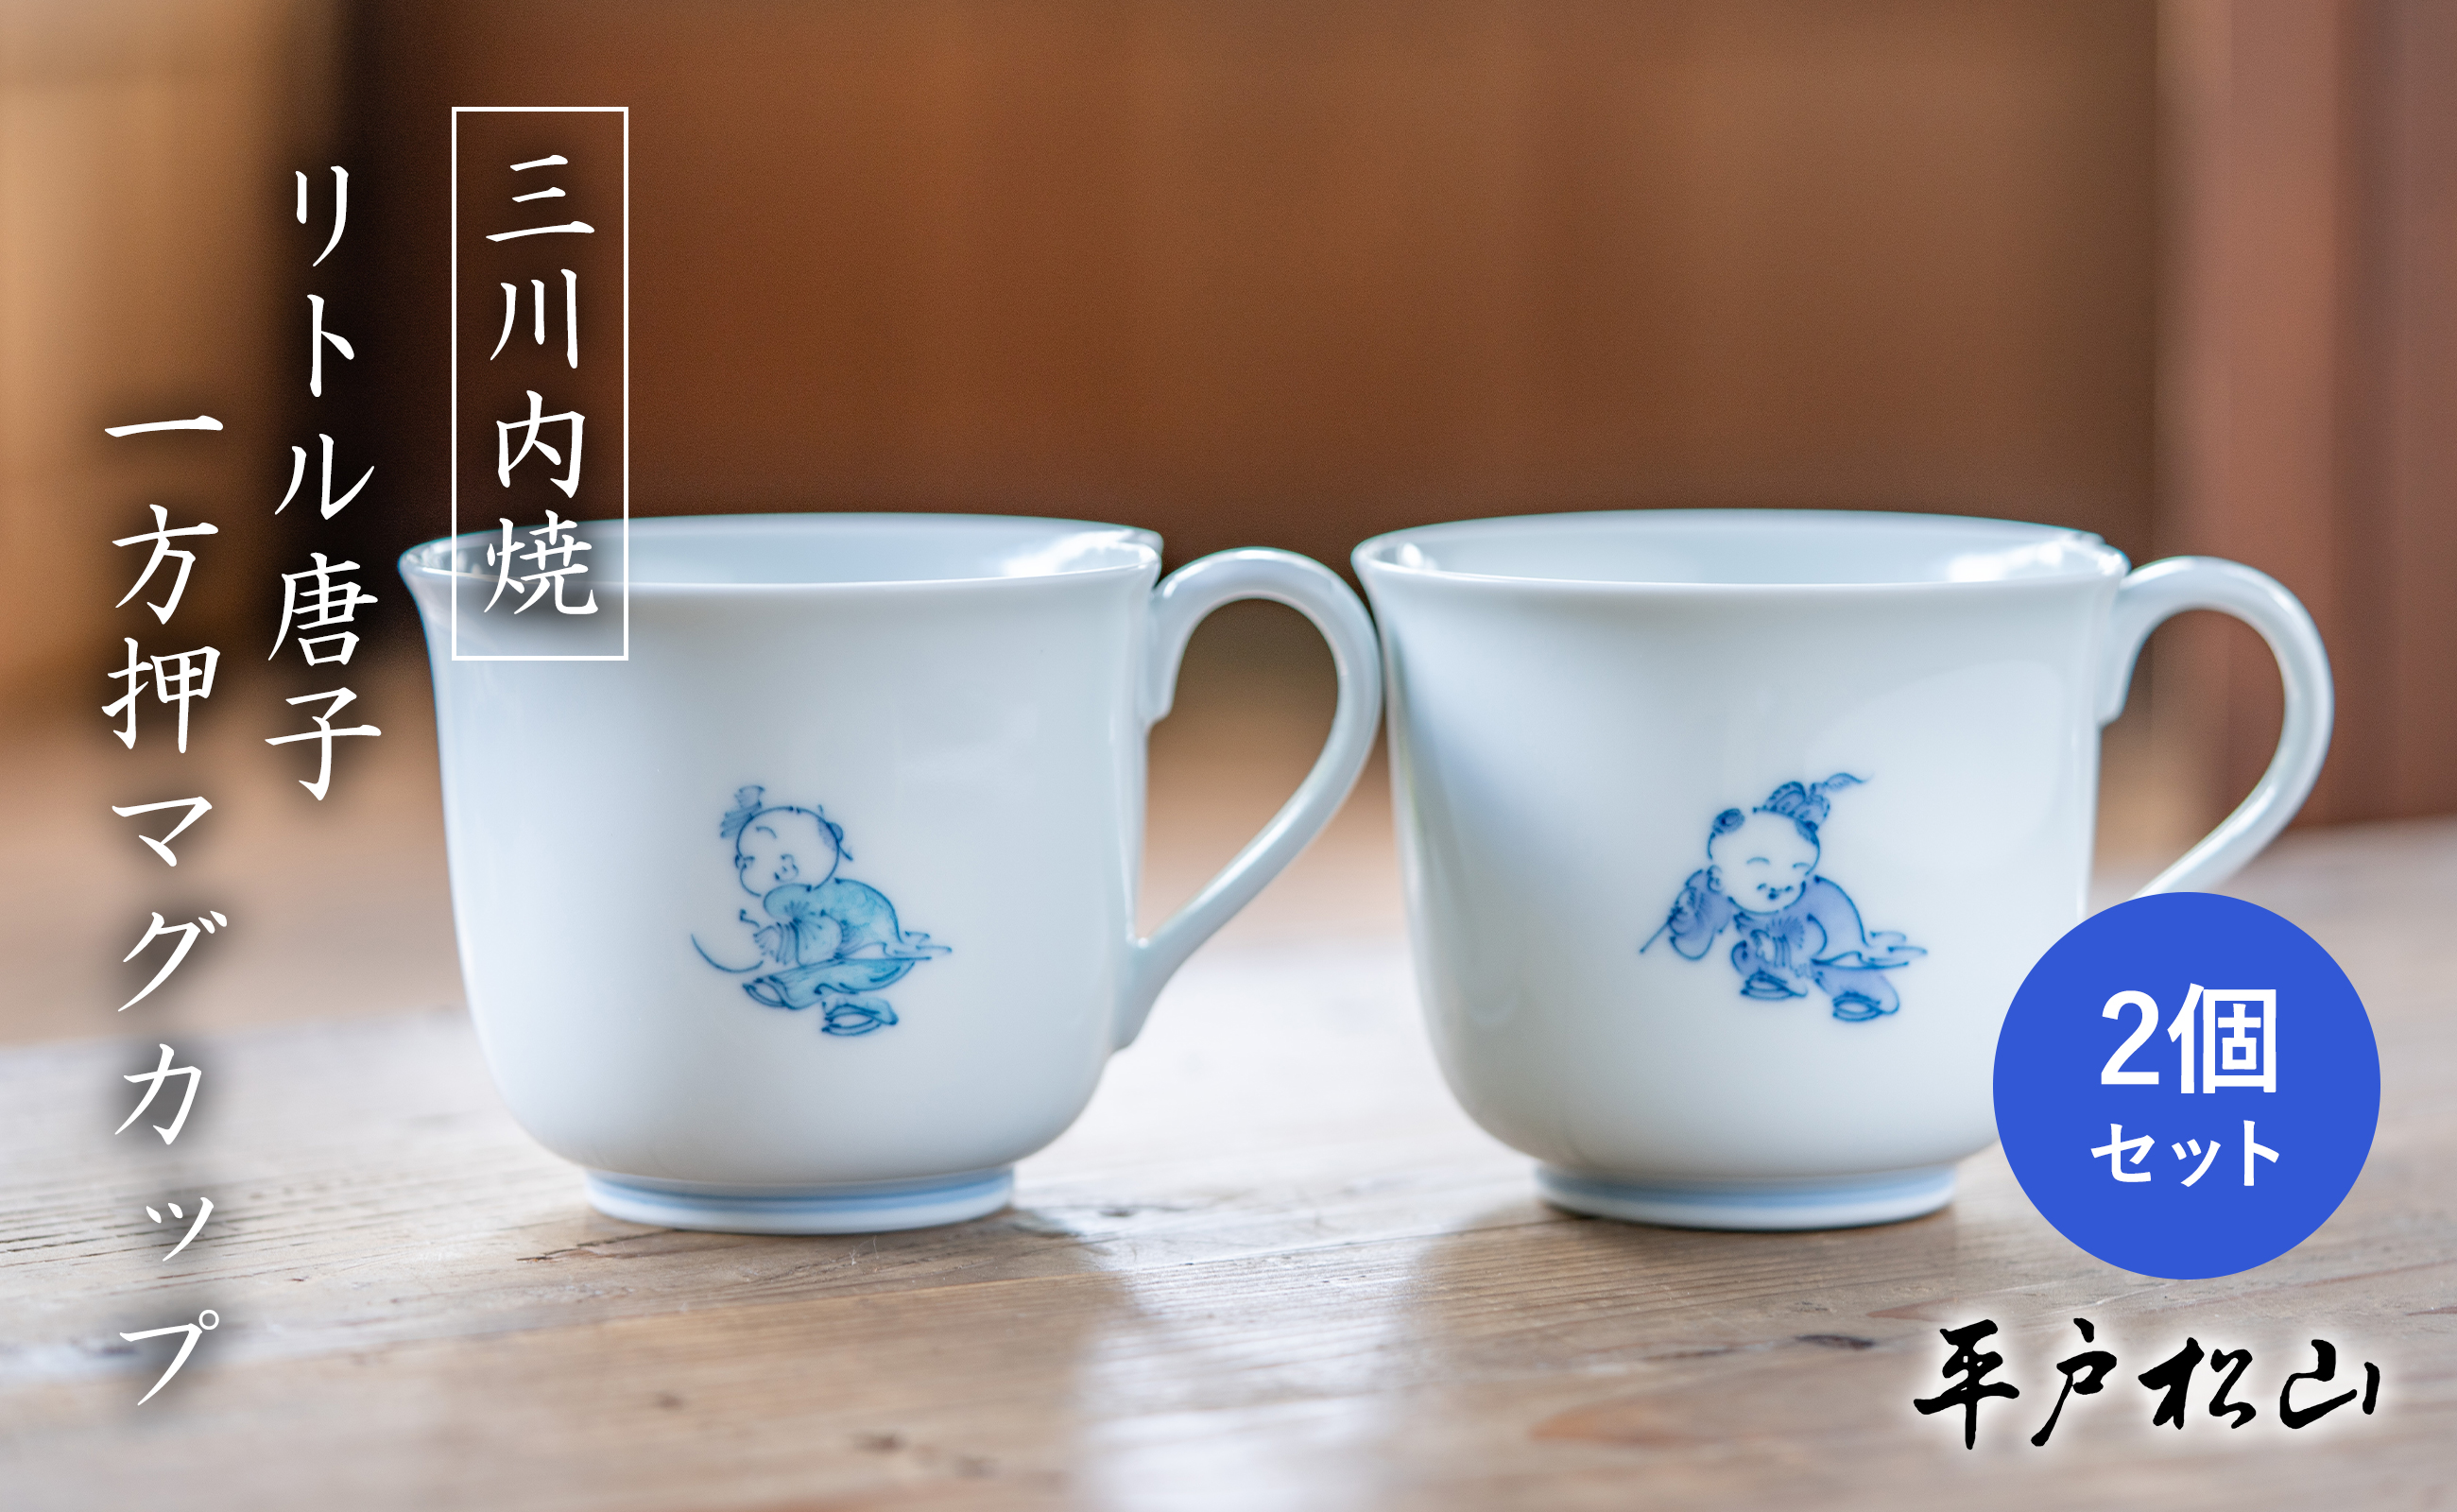 〈平戸松山窯〉一方押マグカップ 2個セット (リトル唐子 紫･水色) 手描き 染付 食器 コップ コーヒーカップ 